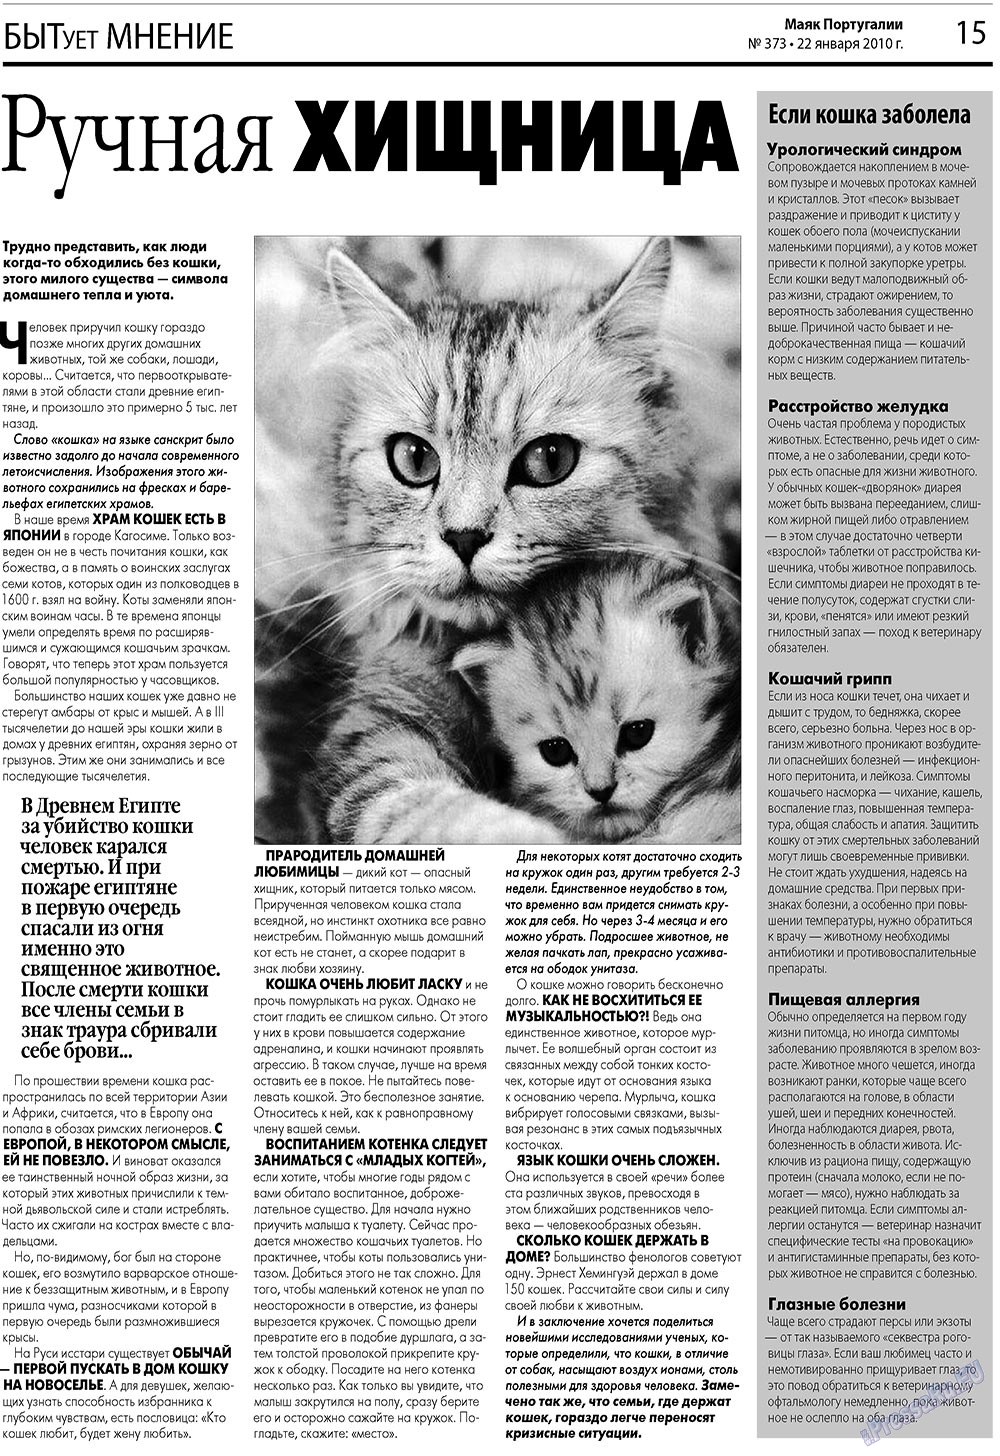 Маяк Португалии (газета). 2010 год, номер 373, стр. 15